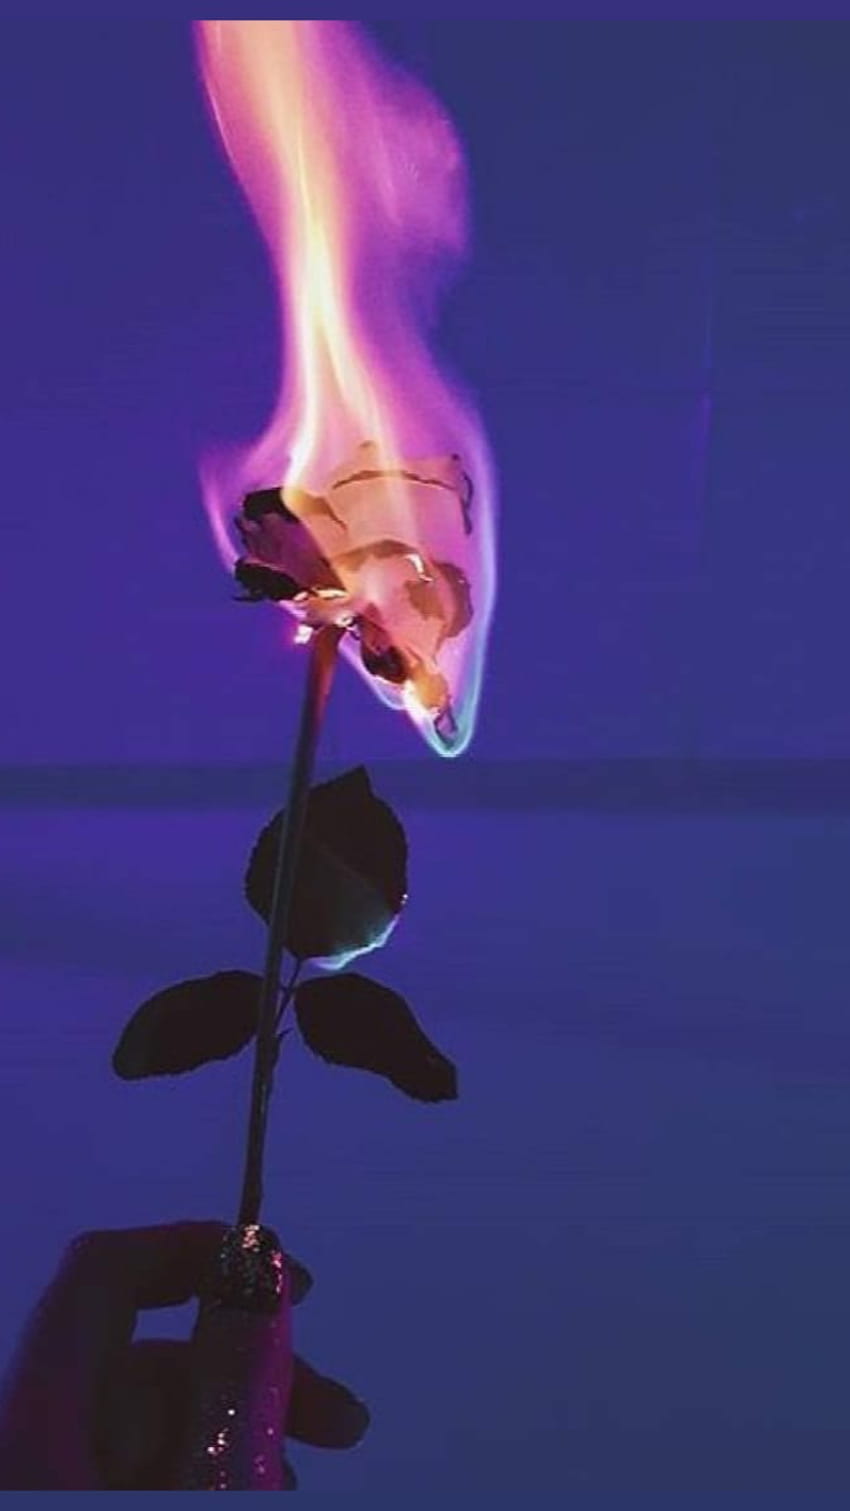 20 Burning Rose ideas | burning rose, rose wallpaper, burning flowers